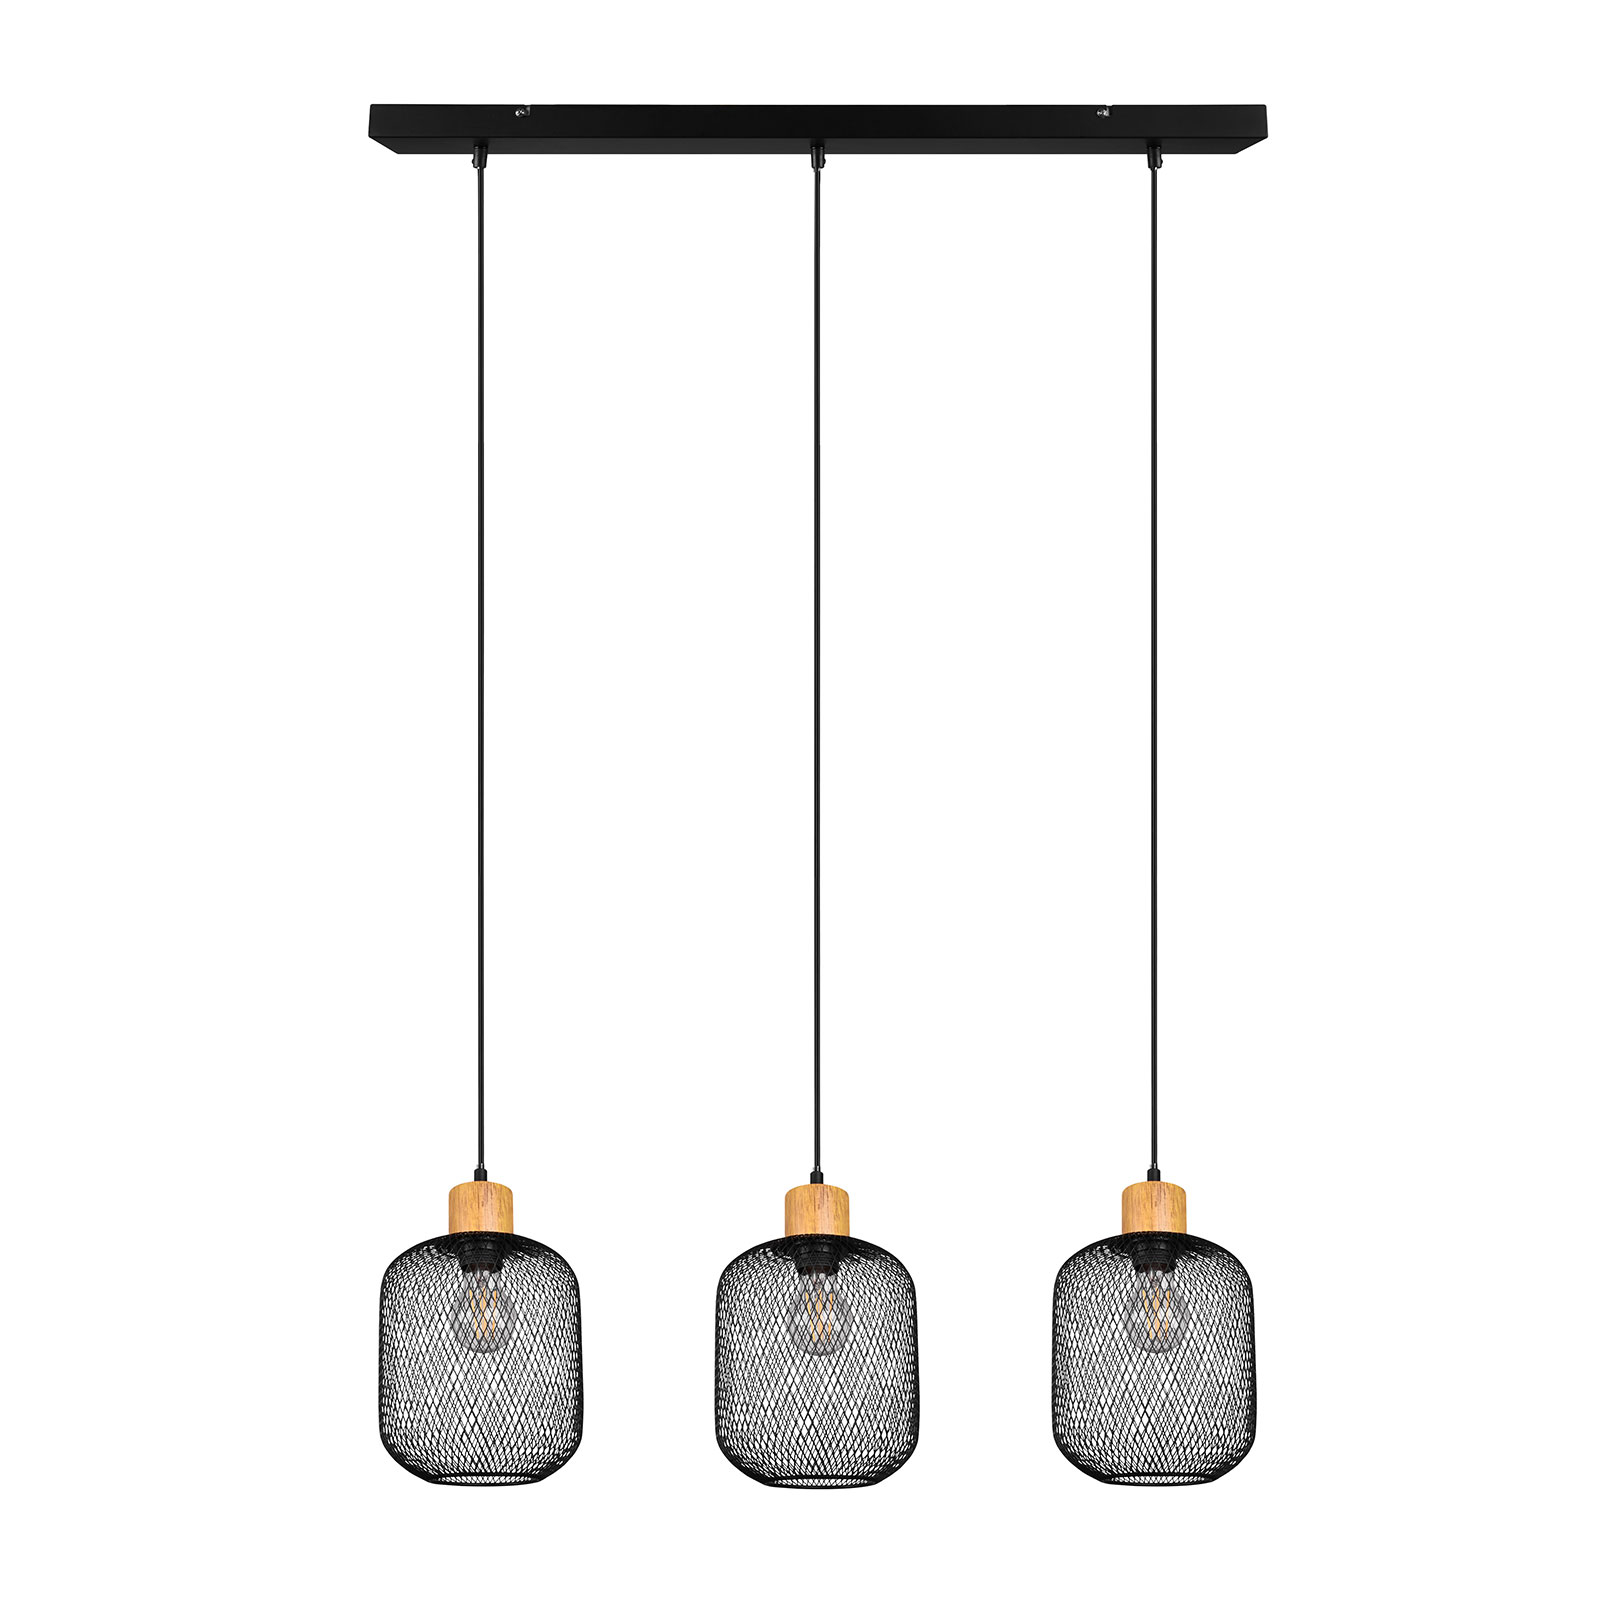 Hanglamp Calimero kooi-look 3-lamps